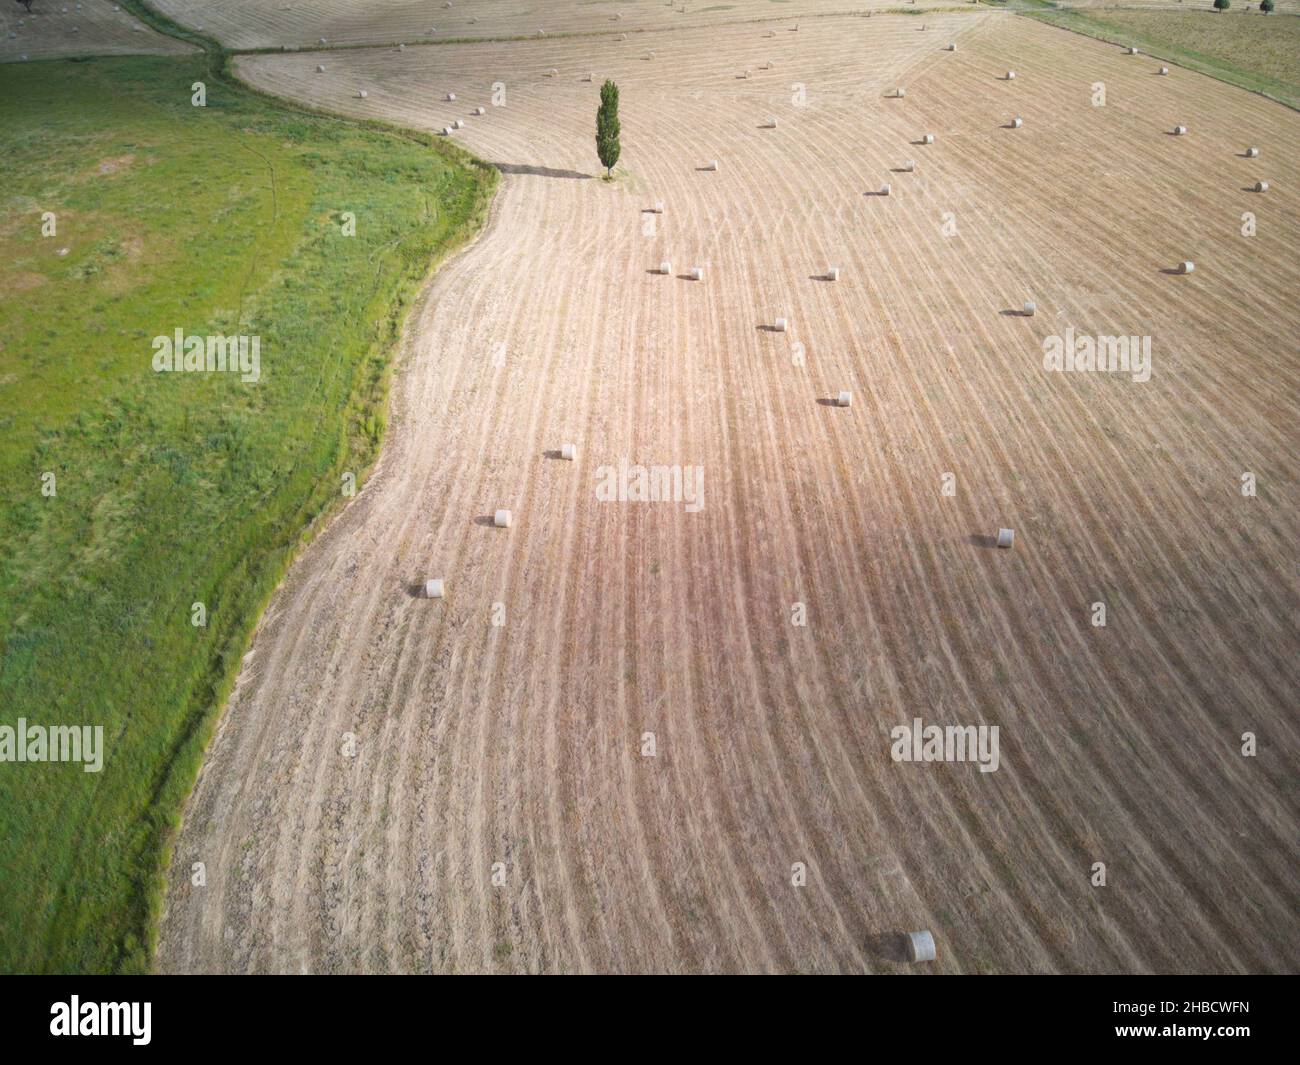 Agricoltura aerea e paesaggio rurale che mostra balle di fieno, modelli di raccolto e l'albero solato, con paddock verde, Victoria centrale, Australia. Foto Stock